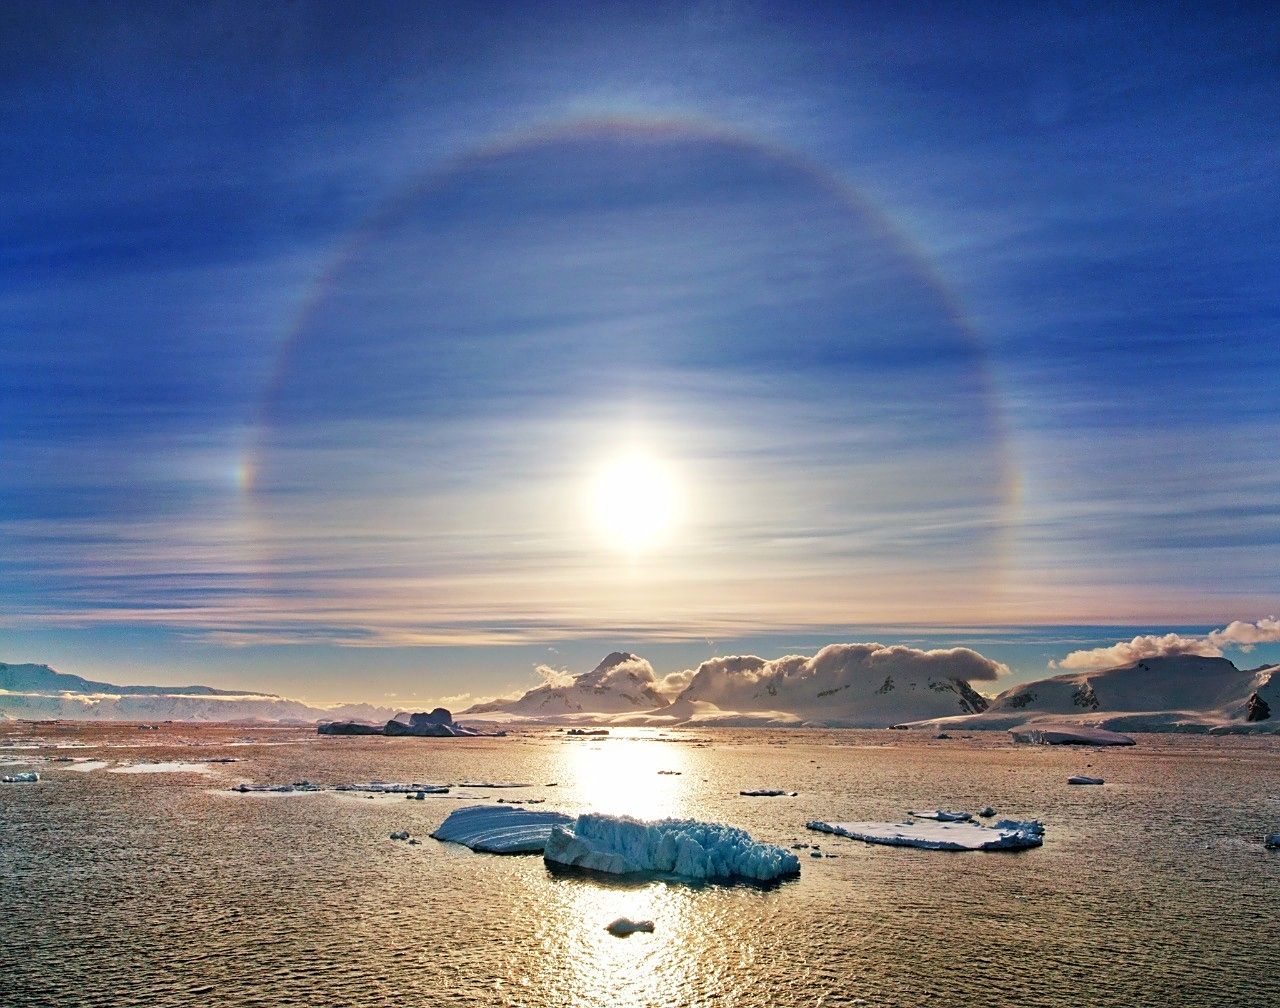 冰雪覆盖的南极,星球美景,星球之边